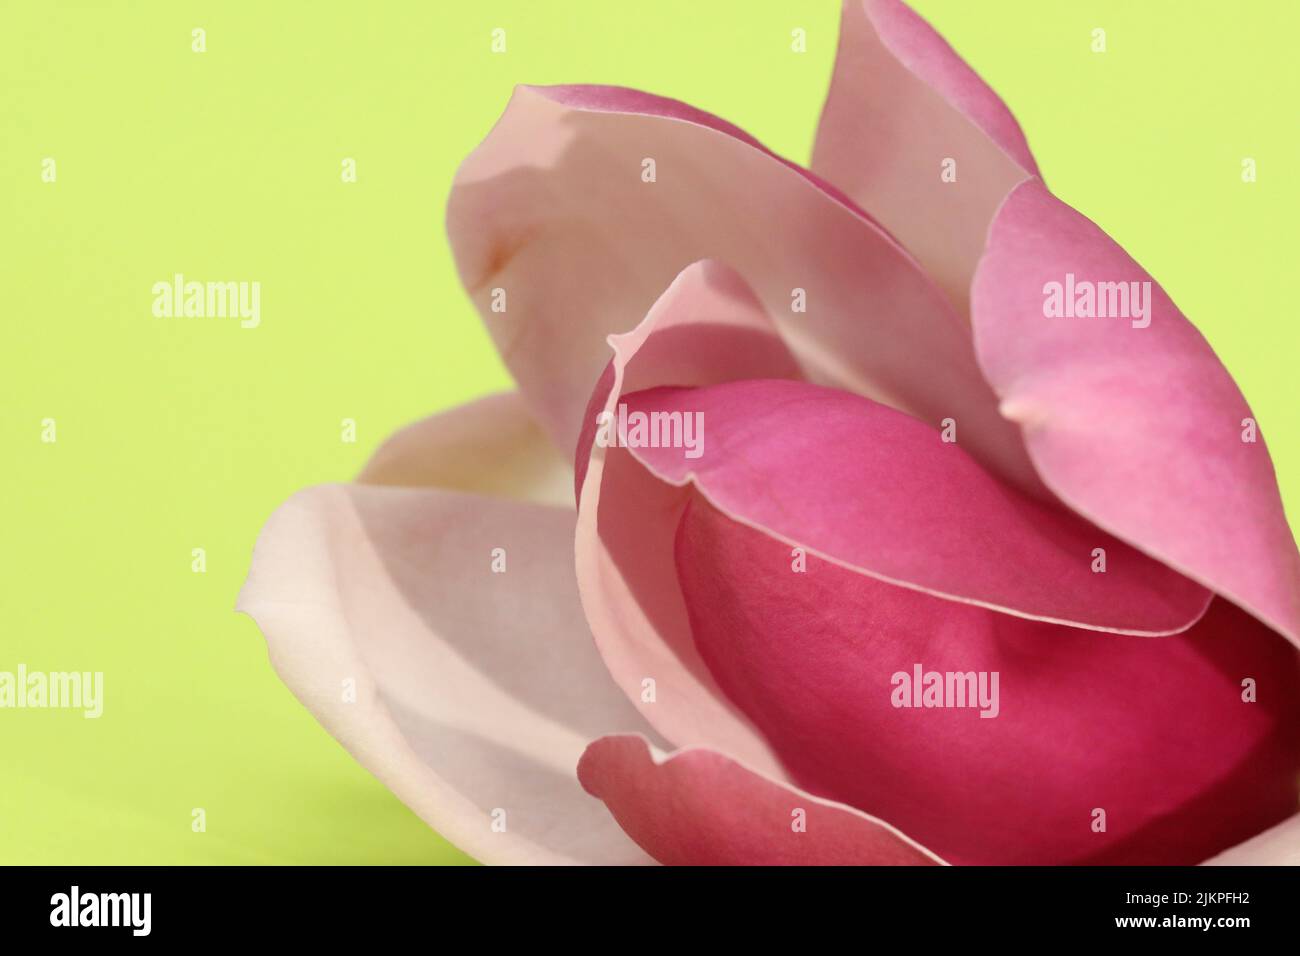 Flor de magnolia rosa con delicados pétalos y flores aisladas sobre un fondo verde claro y amarillo claro Foto de stock